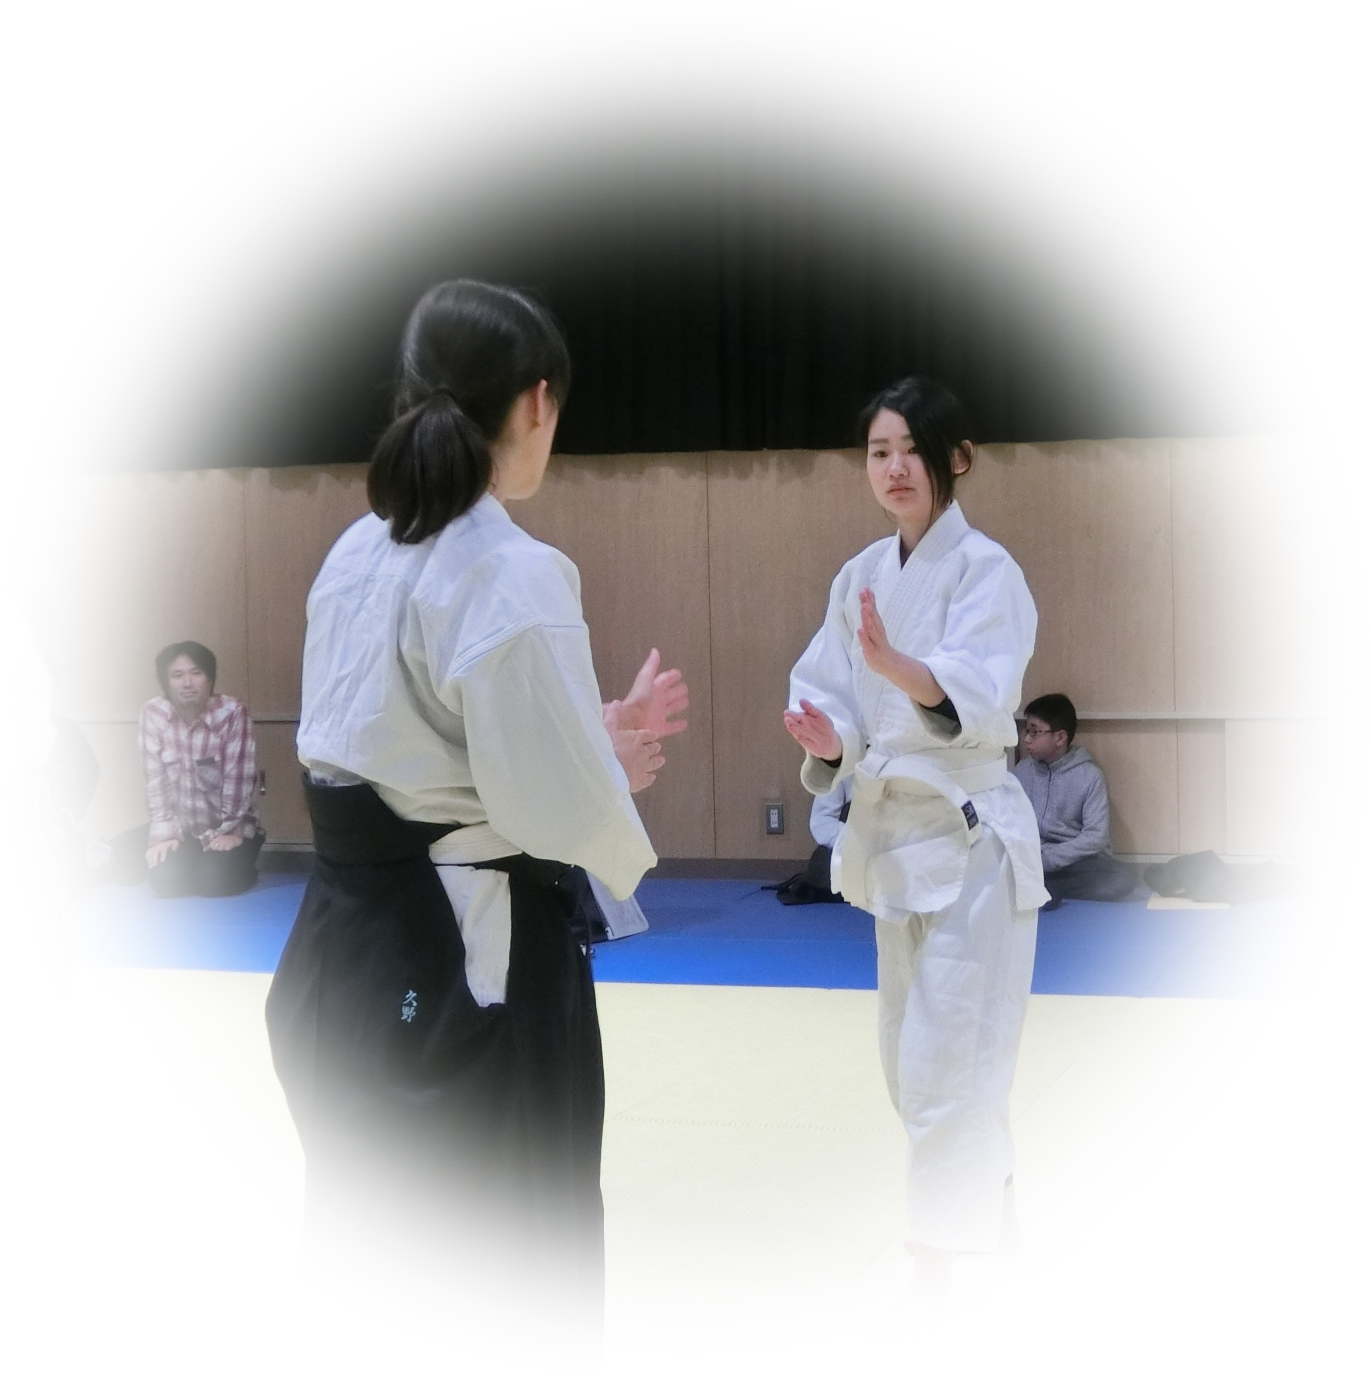 若い女性と合気道 大阪住吉の春風会合気道 大阪 春風会合気道aikidoは大阪市住吉区の三稜中学挌技室で稽古しています